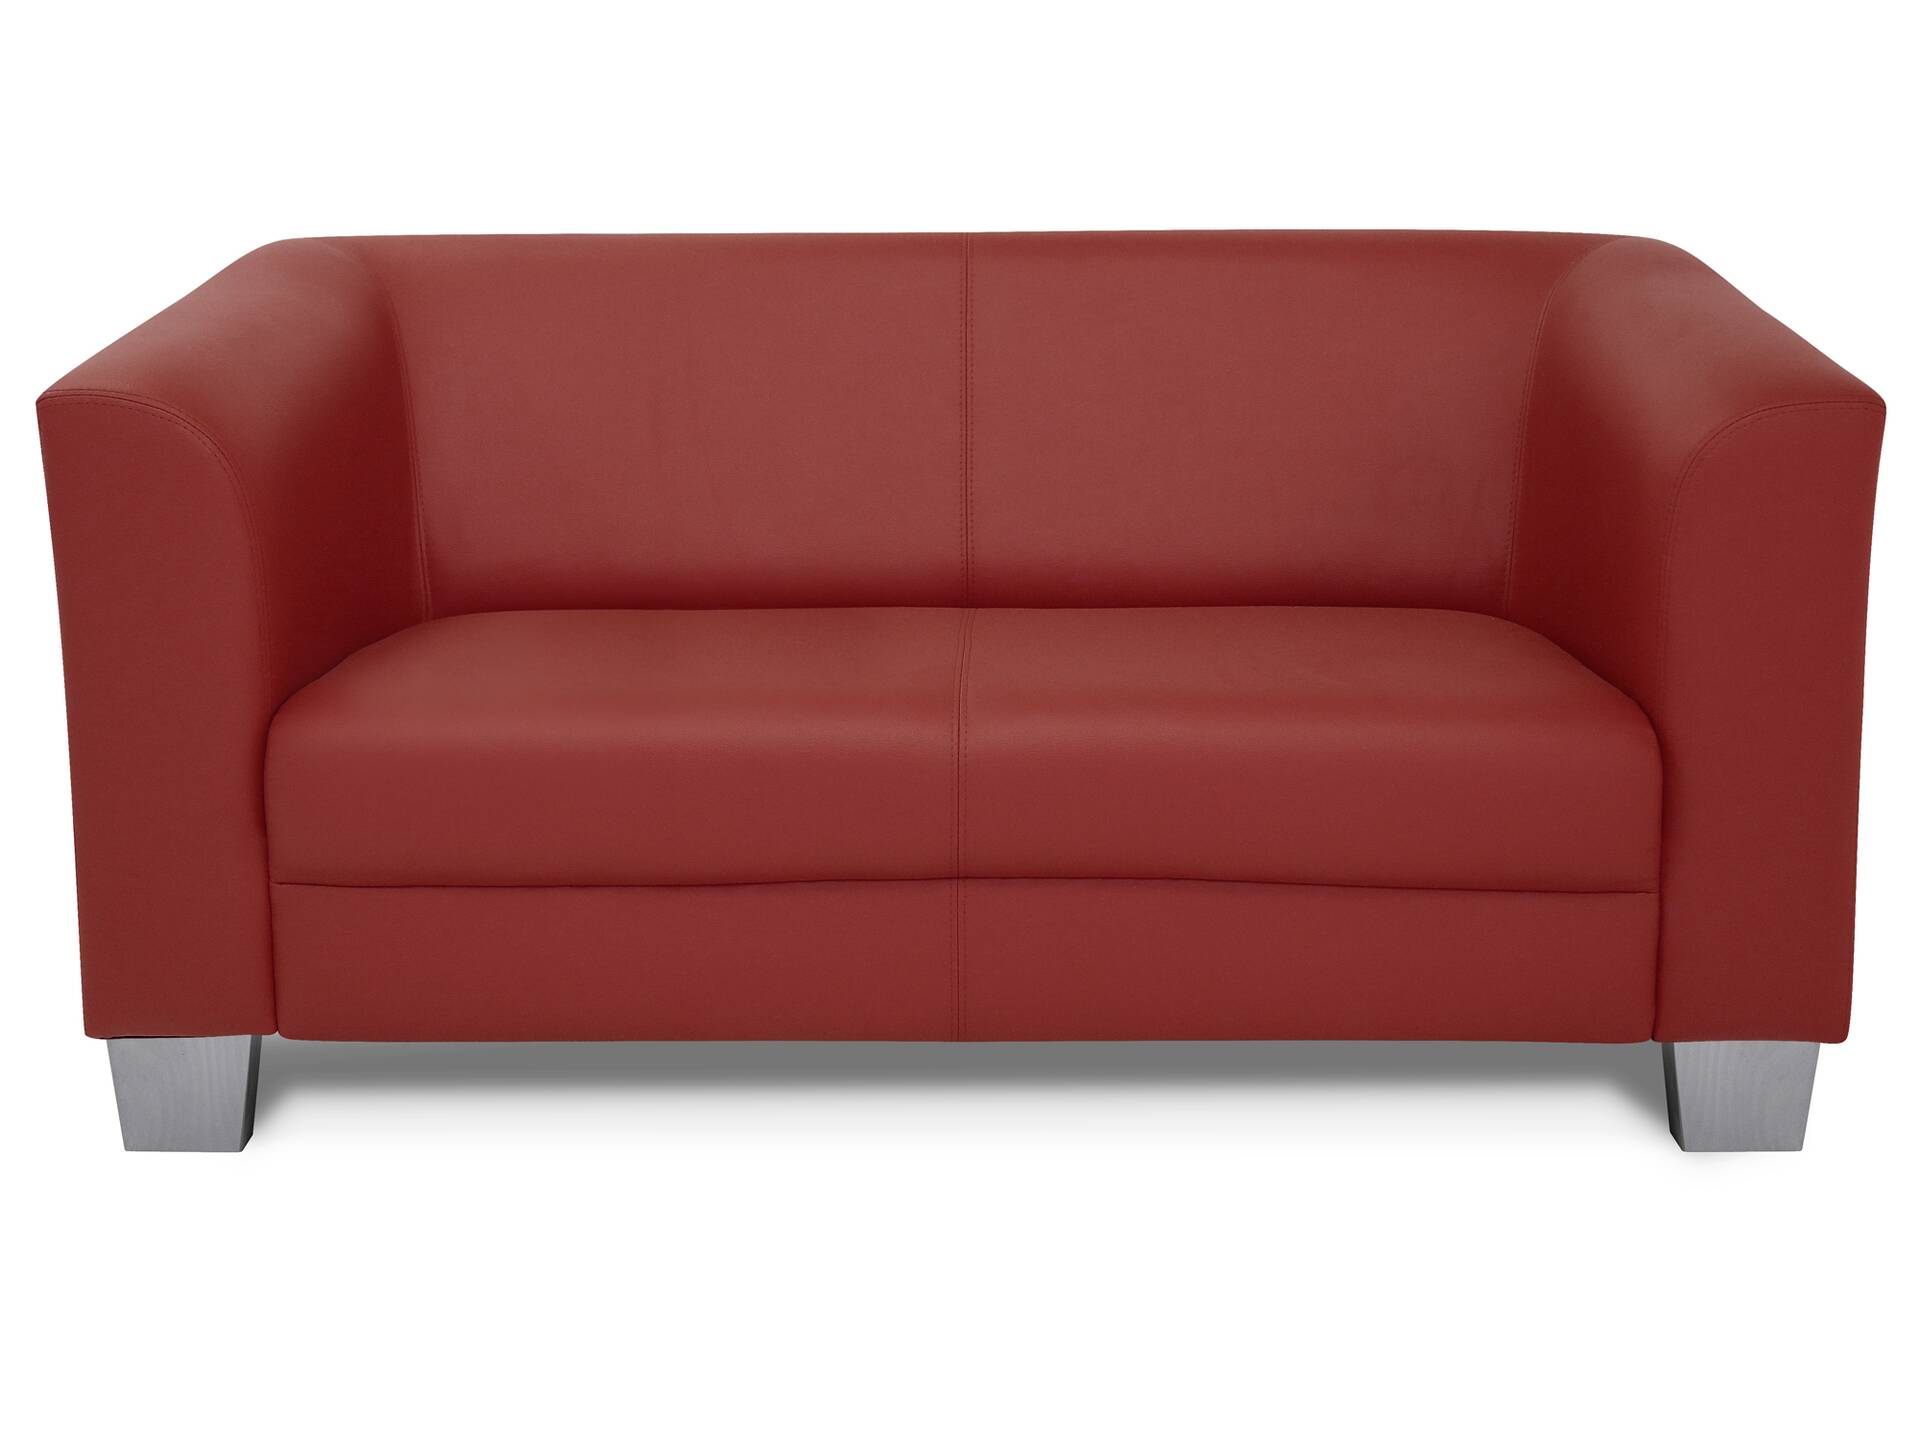 CHICAGO 2-Sitzer Sofa, Material Kunstleder weinrot